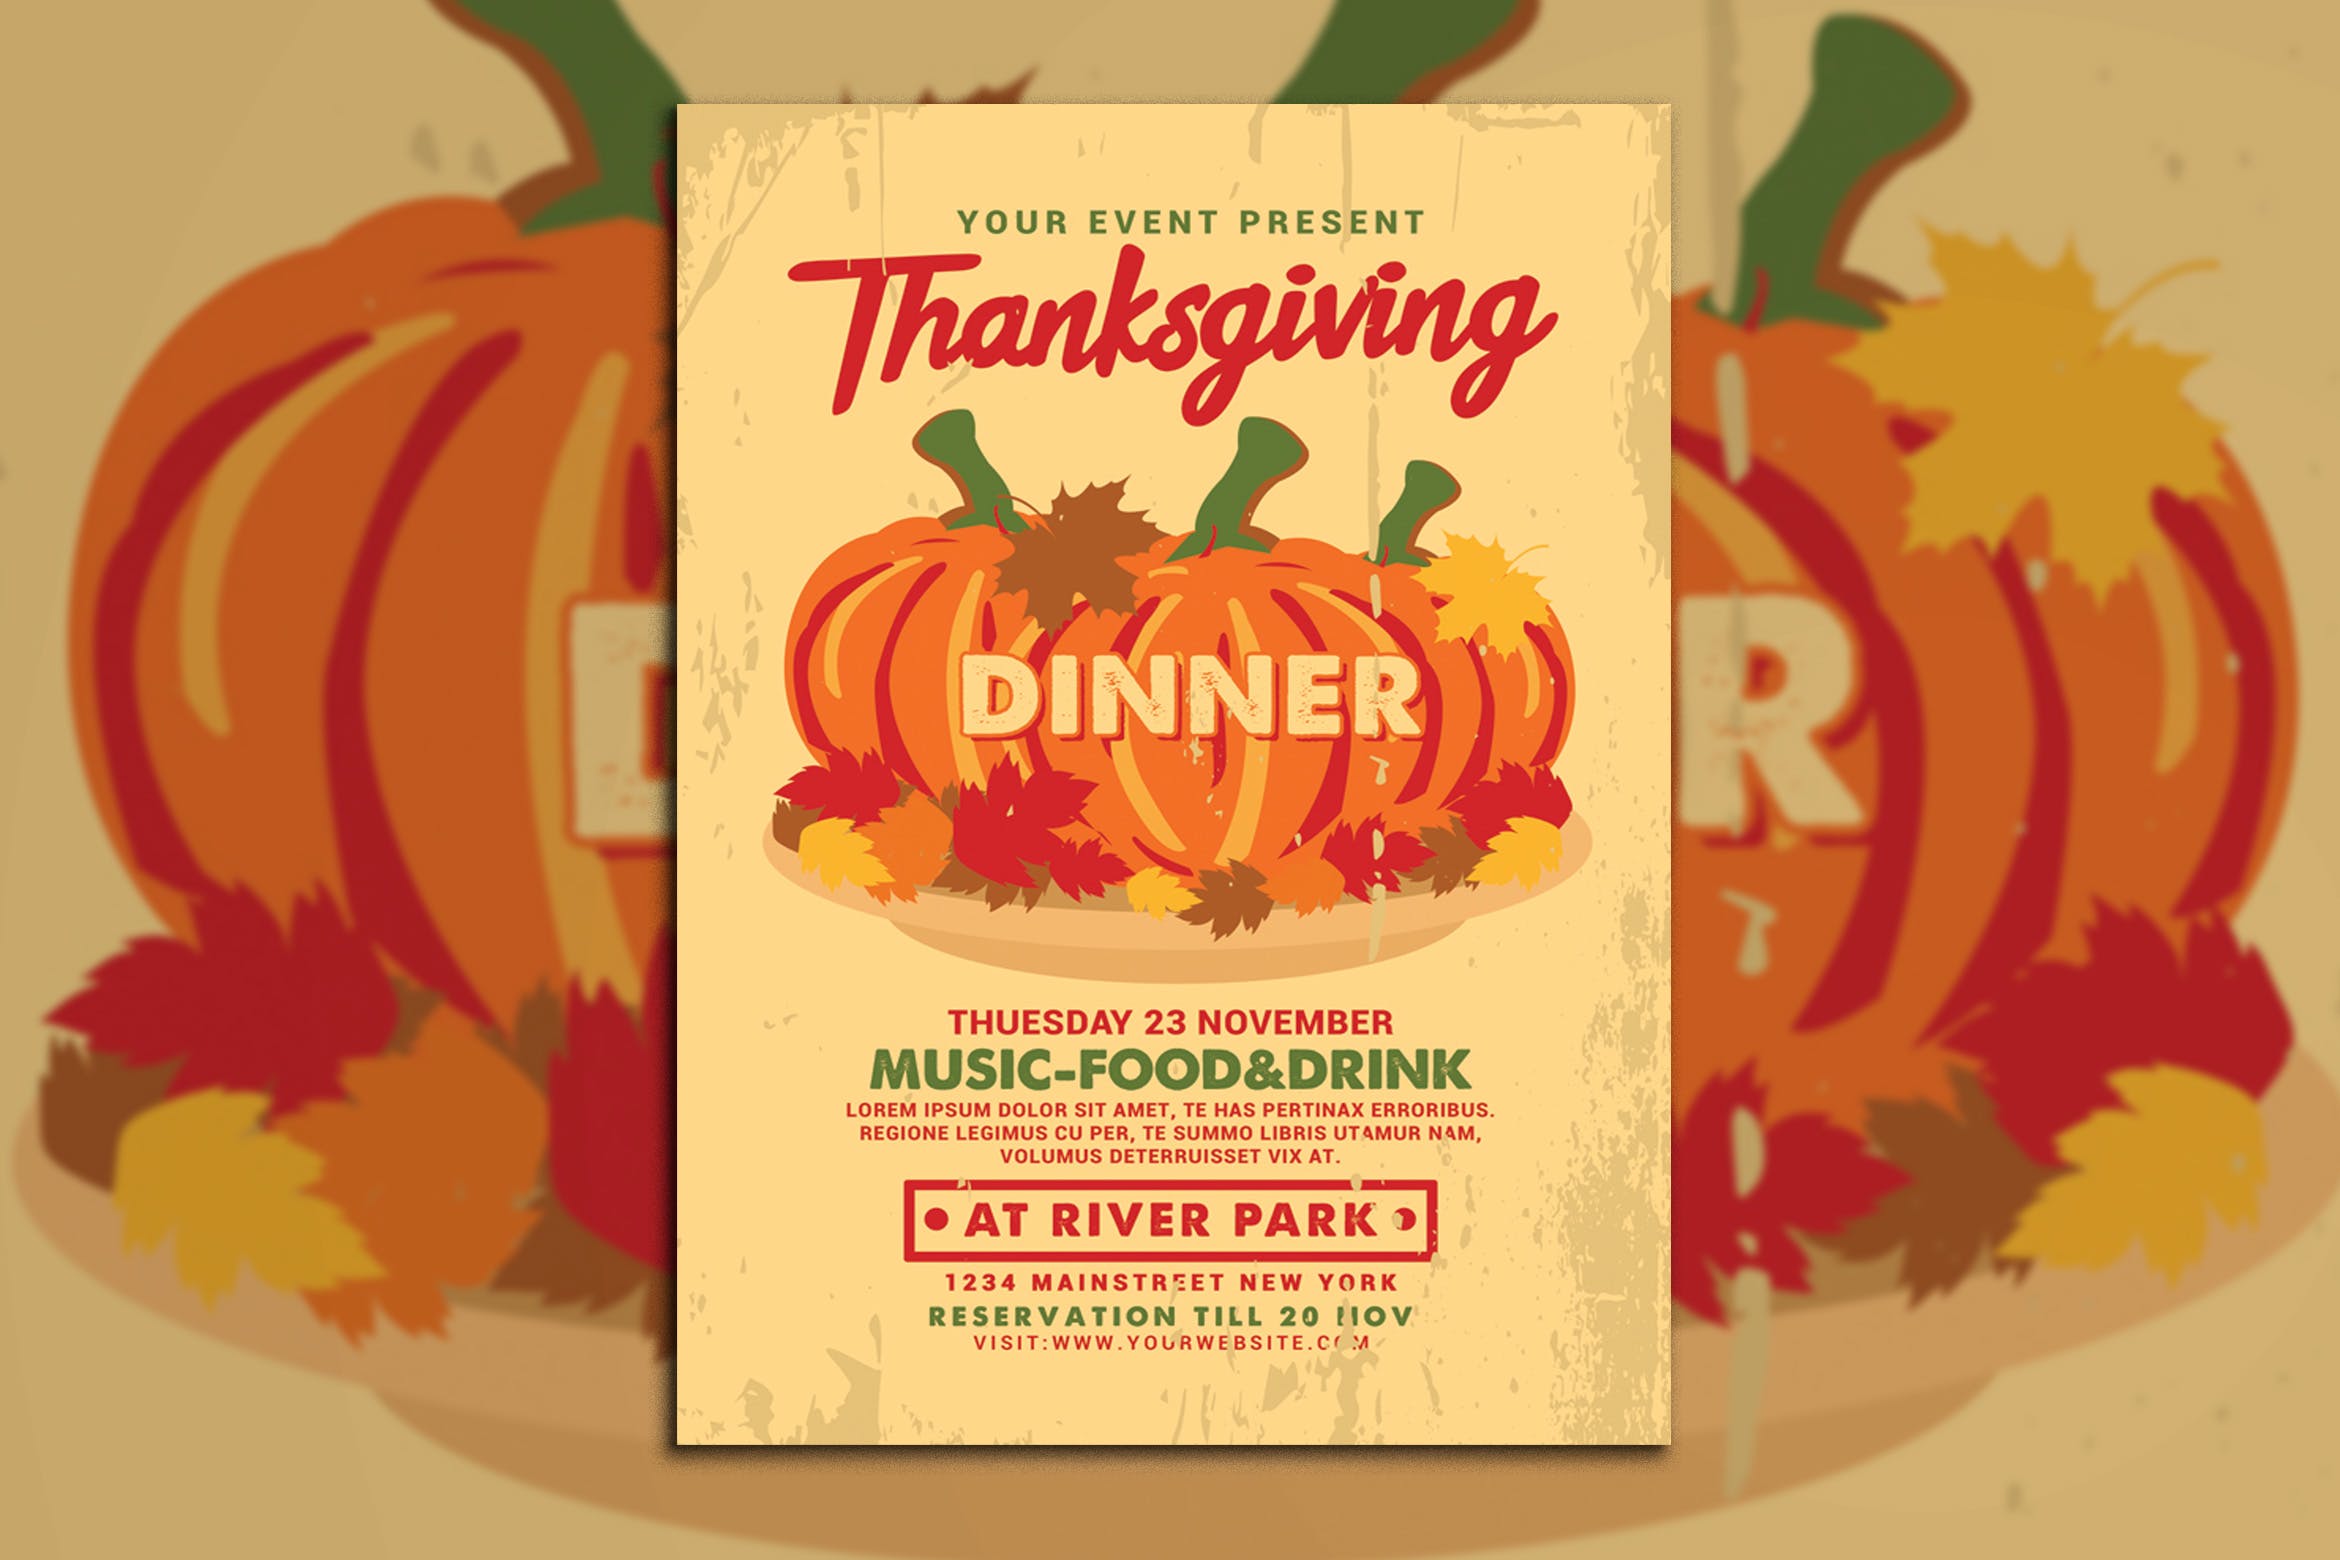 感恩节美食音乐主题活动海报传单模板 Thanksgiving Dinner Flyer插图